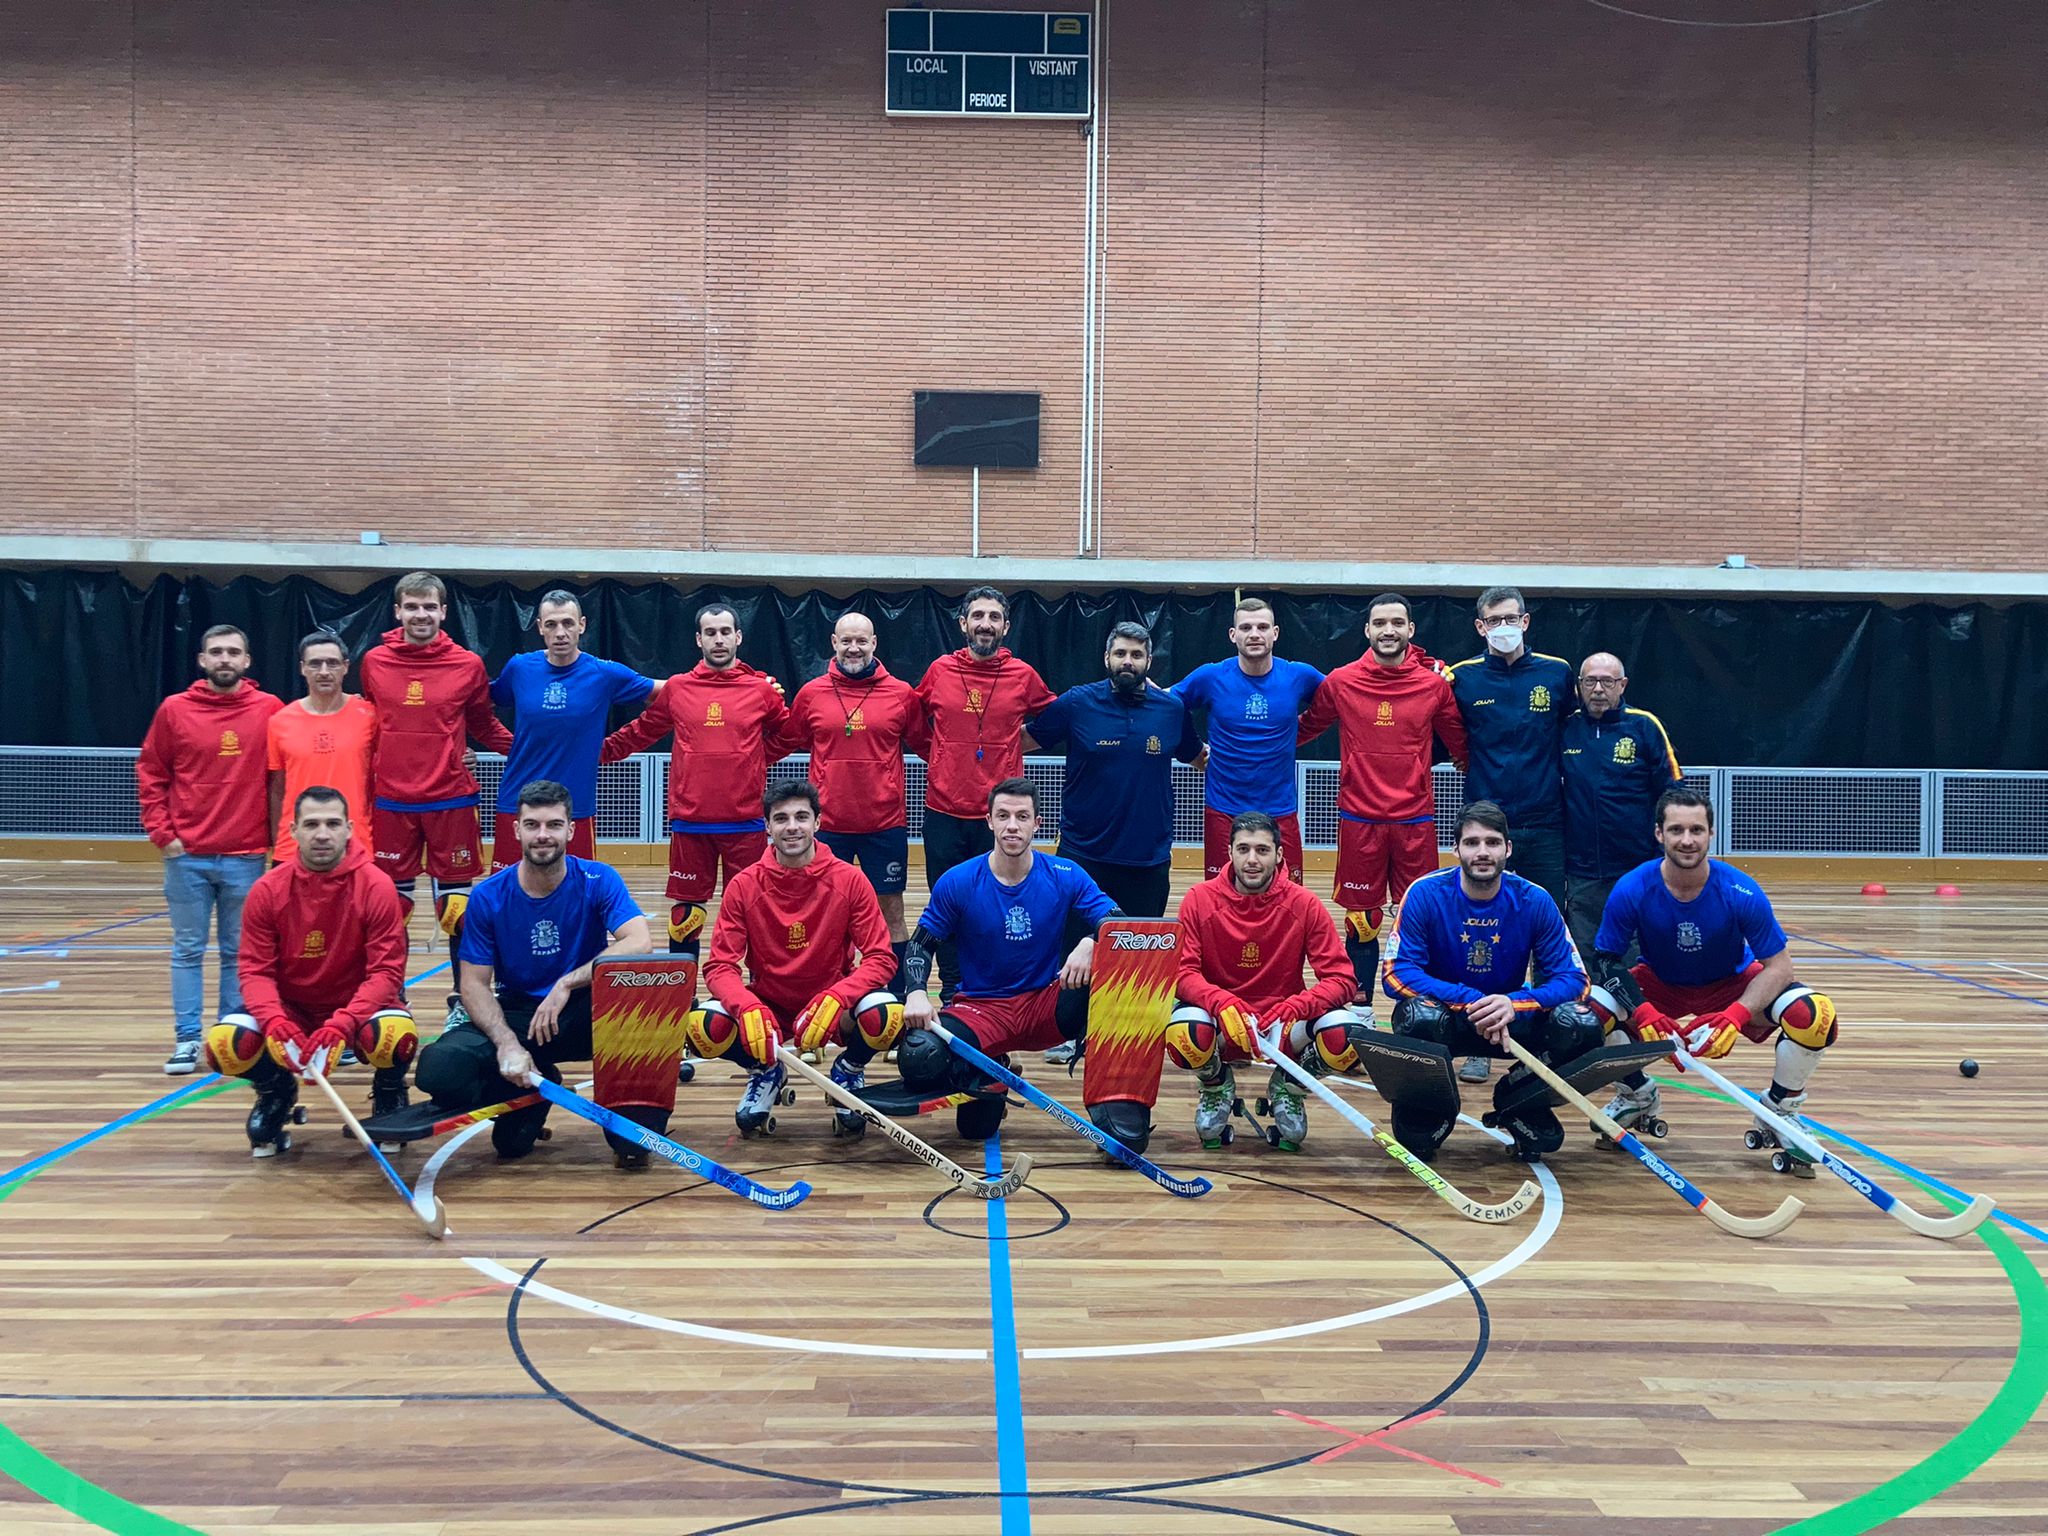 codicioso paralelo Sitio de Previs La selección española absoluta arranca su preparación para el Europeo 2021  - Hockey Patines